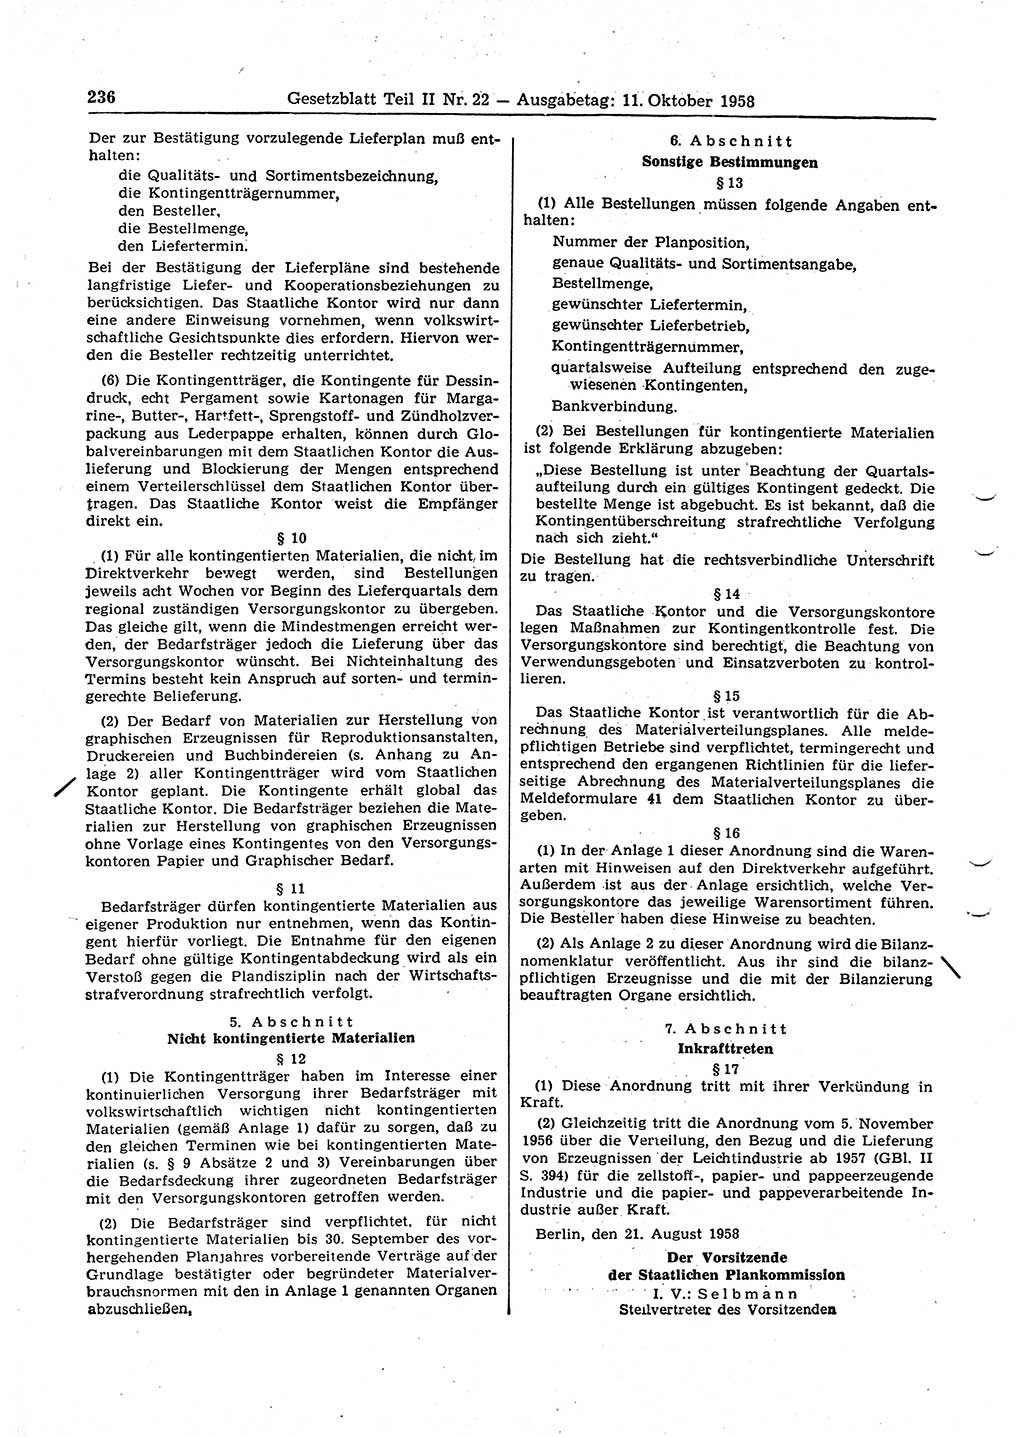 Gesetzblatt (GBl.) der Deutschen Demokratischen Republik (DDR) Teil ⅠⅠ 1958, Seite 236 (GBl. DDR ⅠⅠ 1958, S. 236)